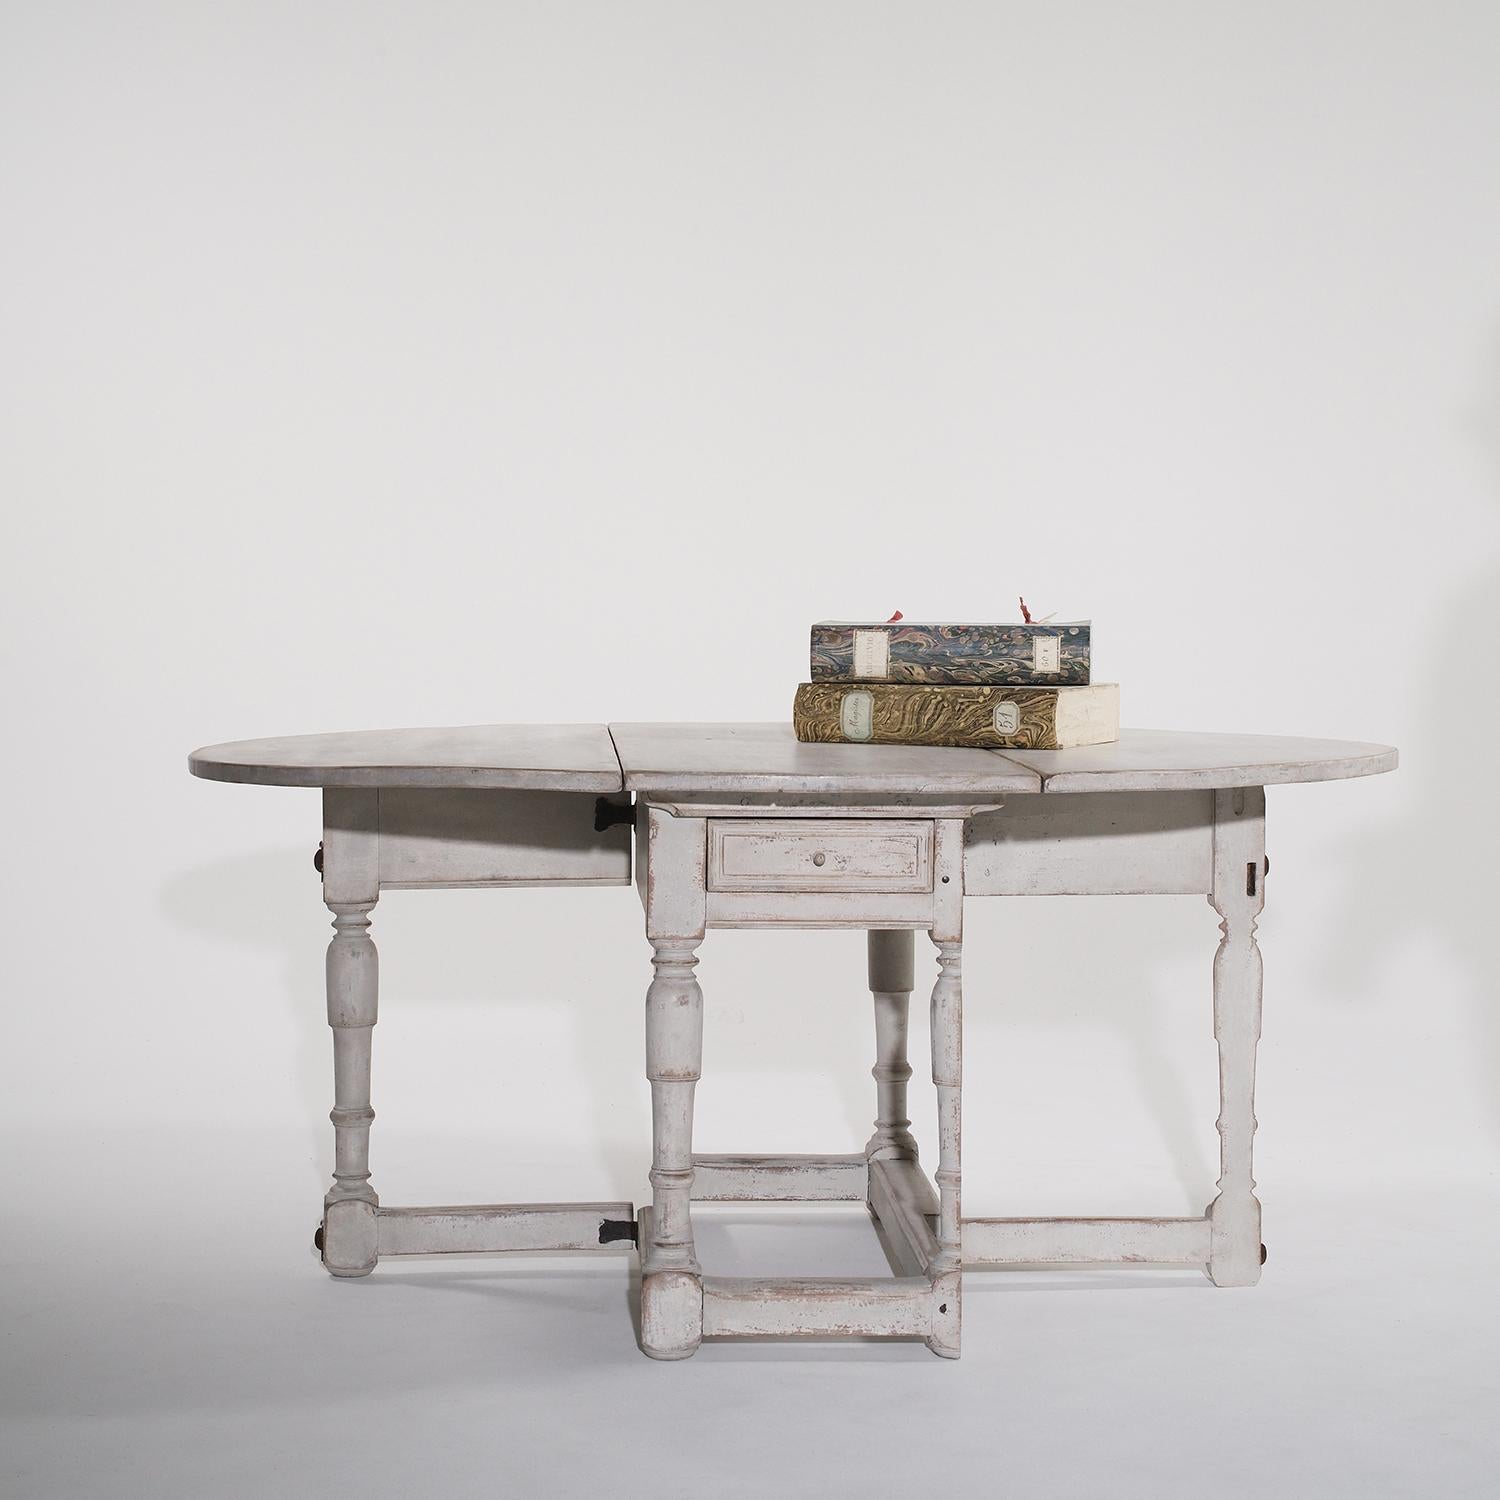 Ancienne table à abattant de style gustavien suédois, gris clair, avec un tiroir, en bois de pin peint à la main, particularisé dans le style néoclassique grec, en bon état. La table à manger scandinave demi-ronde est soutenue par quatre pieds